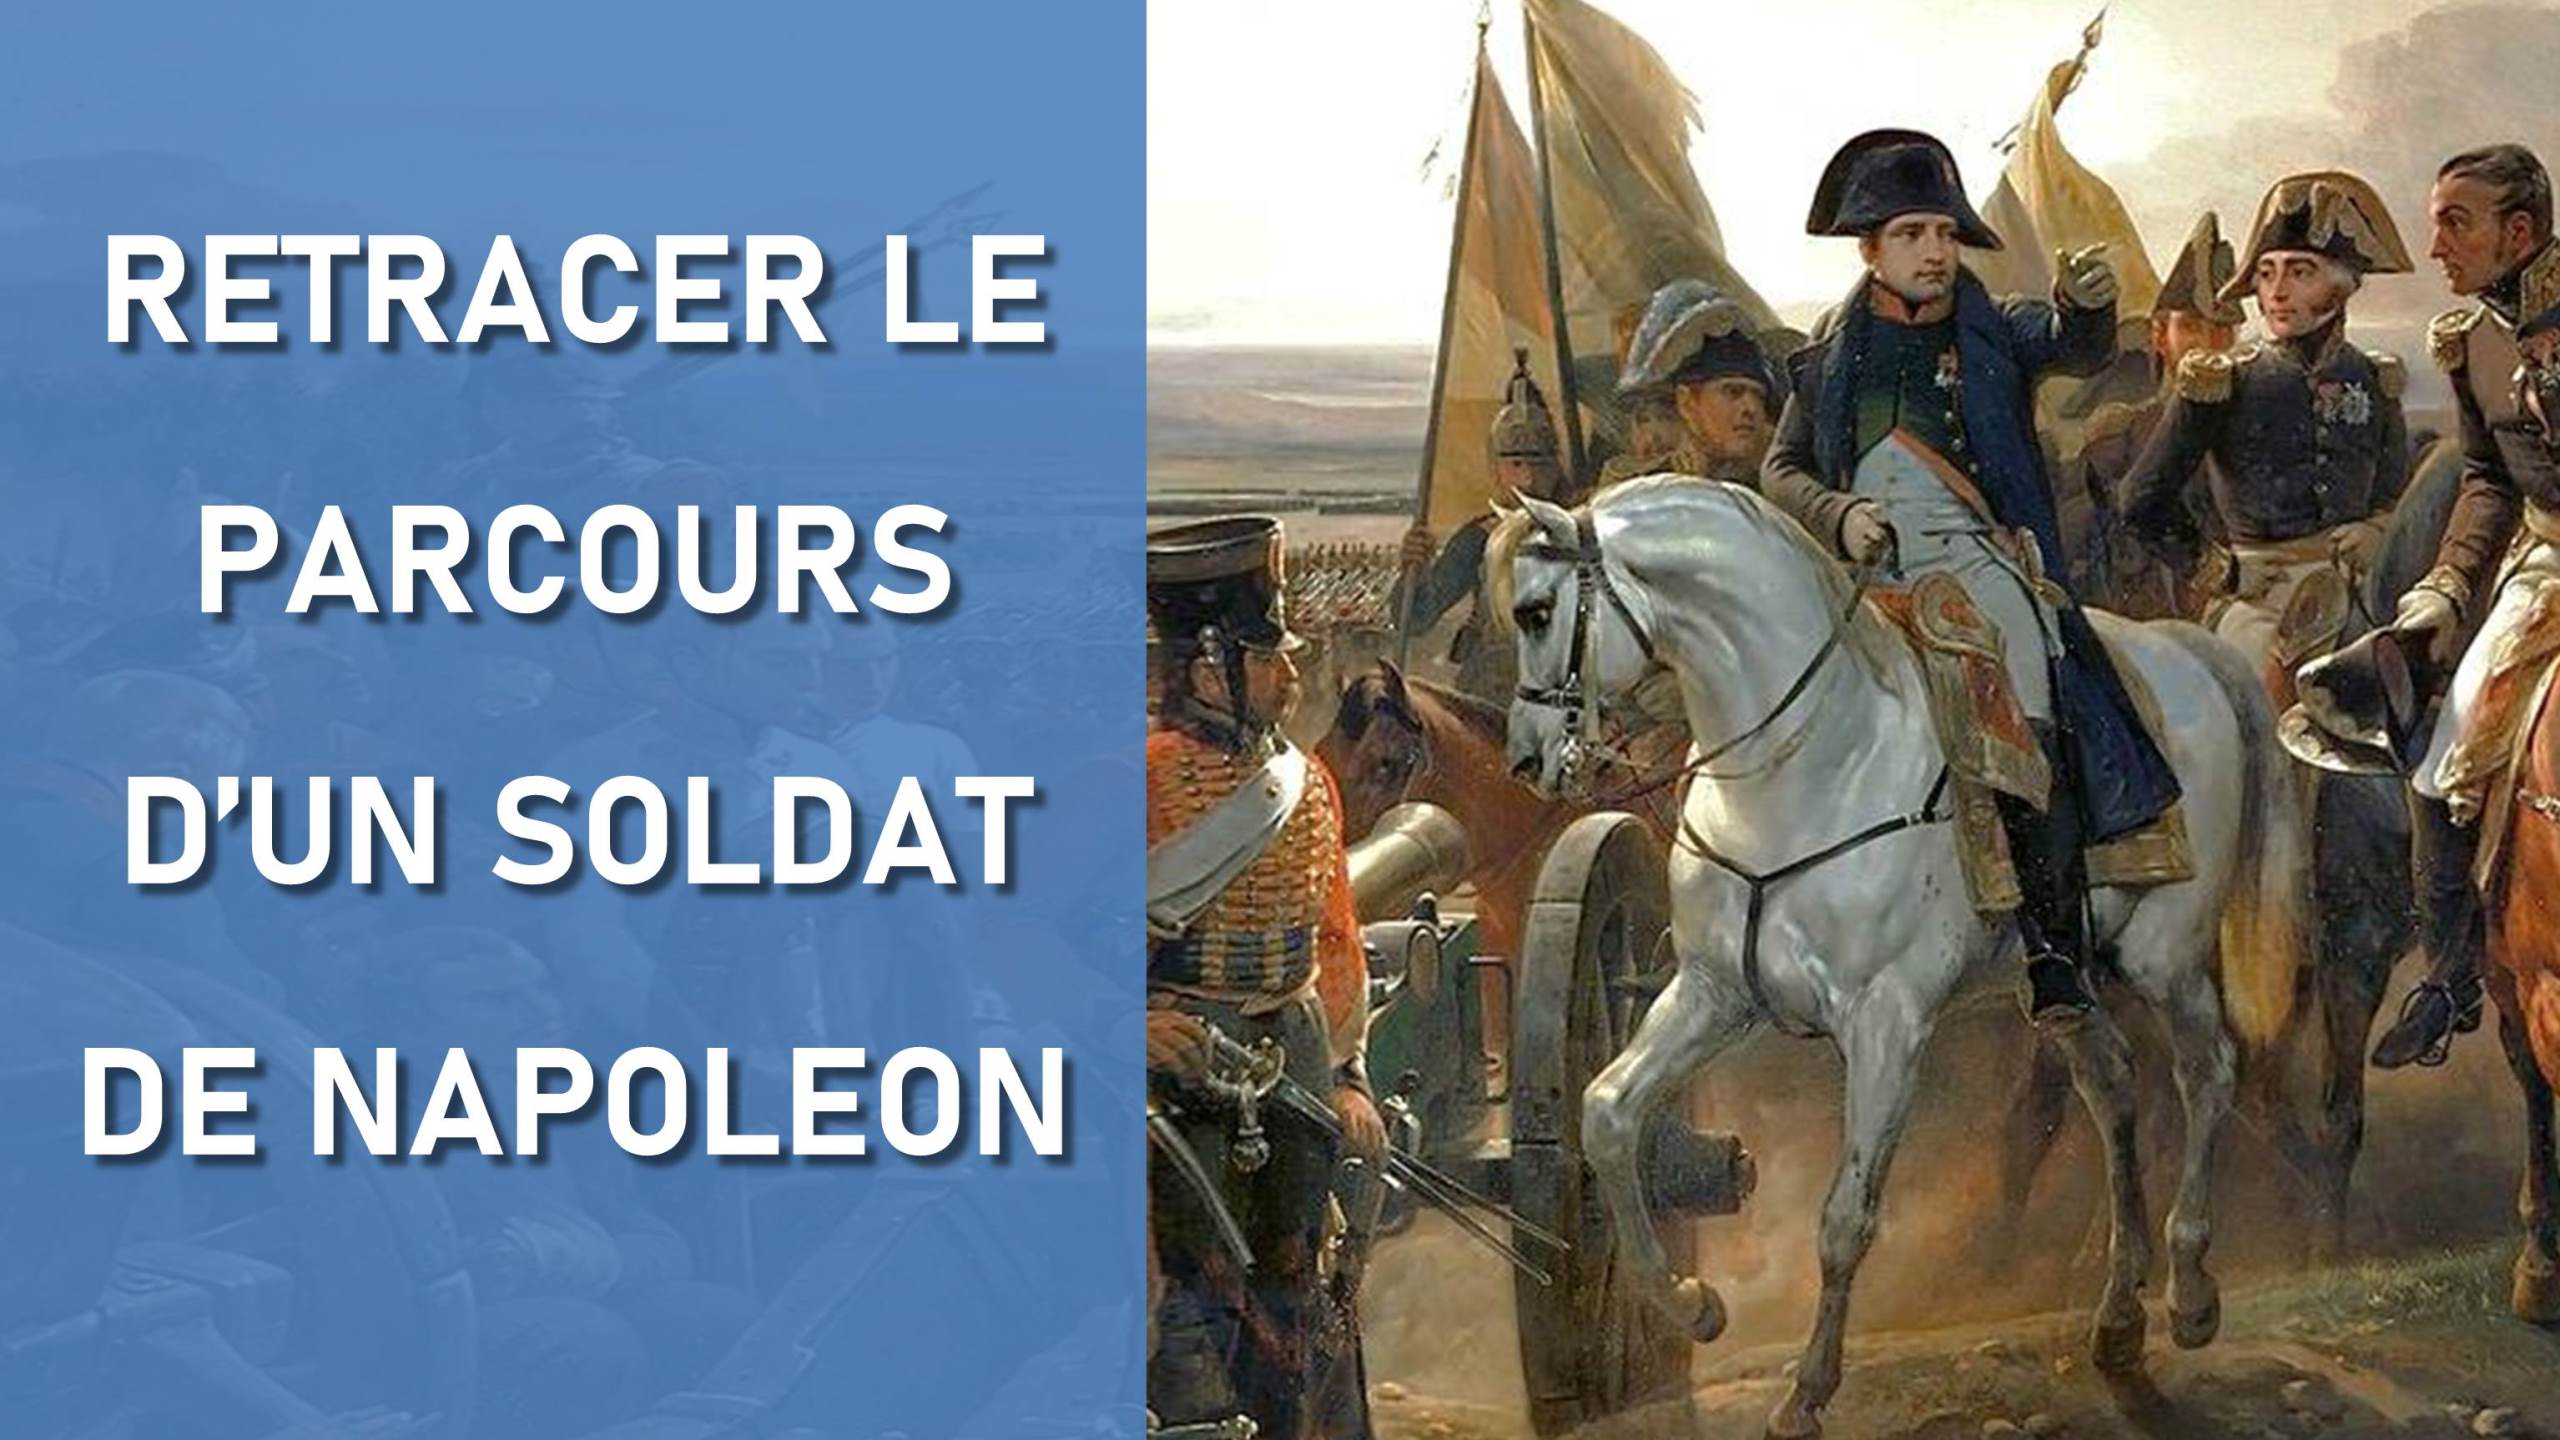 Retracer le parcours d'un soldat de Napoléon – Auprès de nos Racines